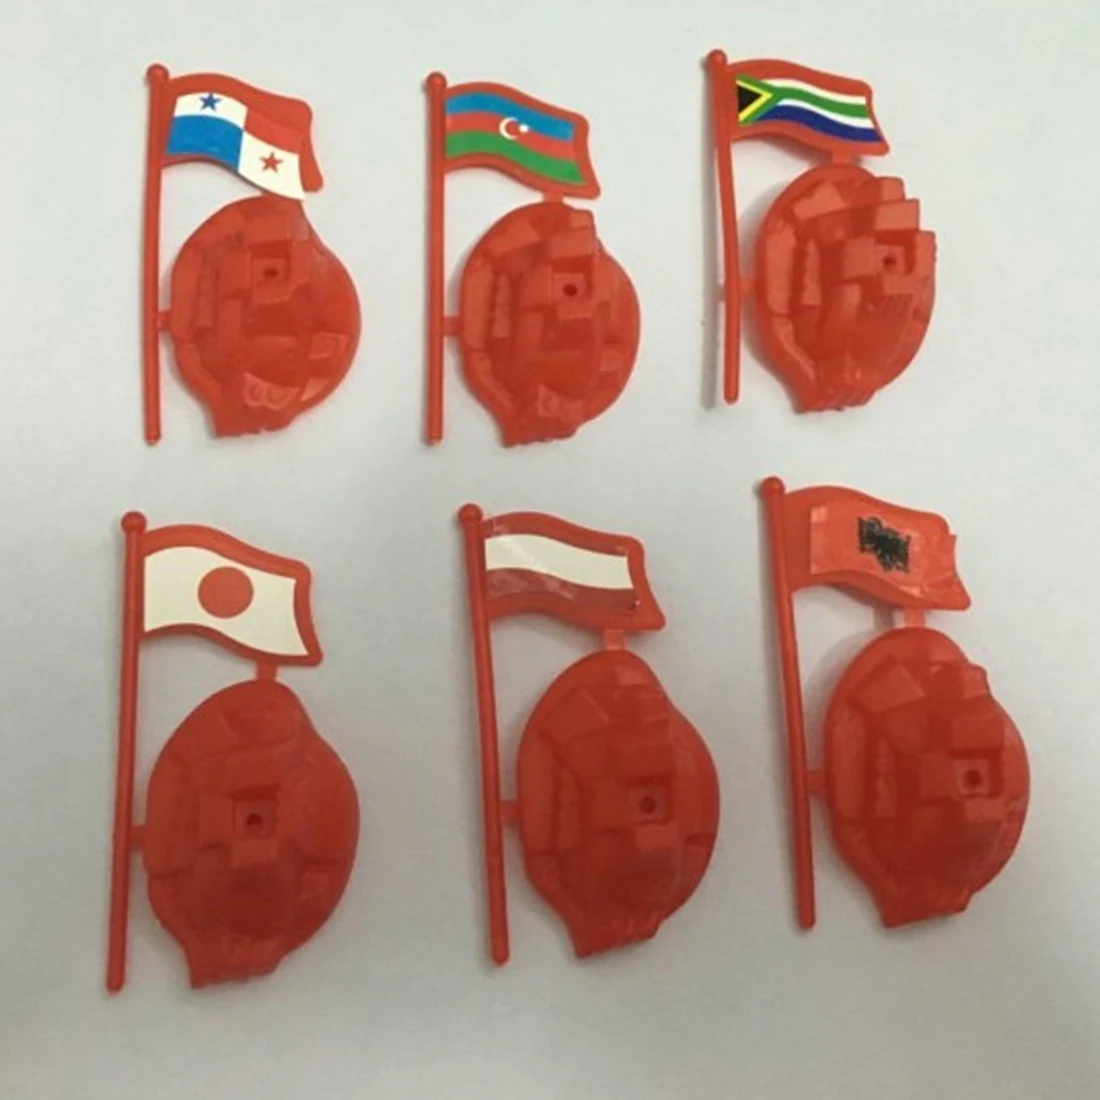 301 шт 5 см пластиковая солдатская модель Второй мировой войны солдатская Военная игрушка набор для детей миниатюрные Фигурки игрушки для мальчиков